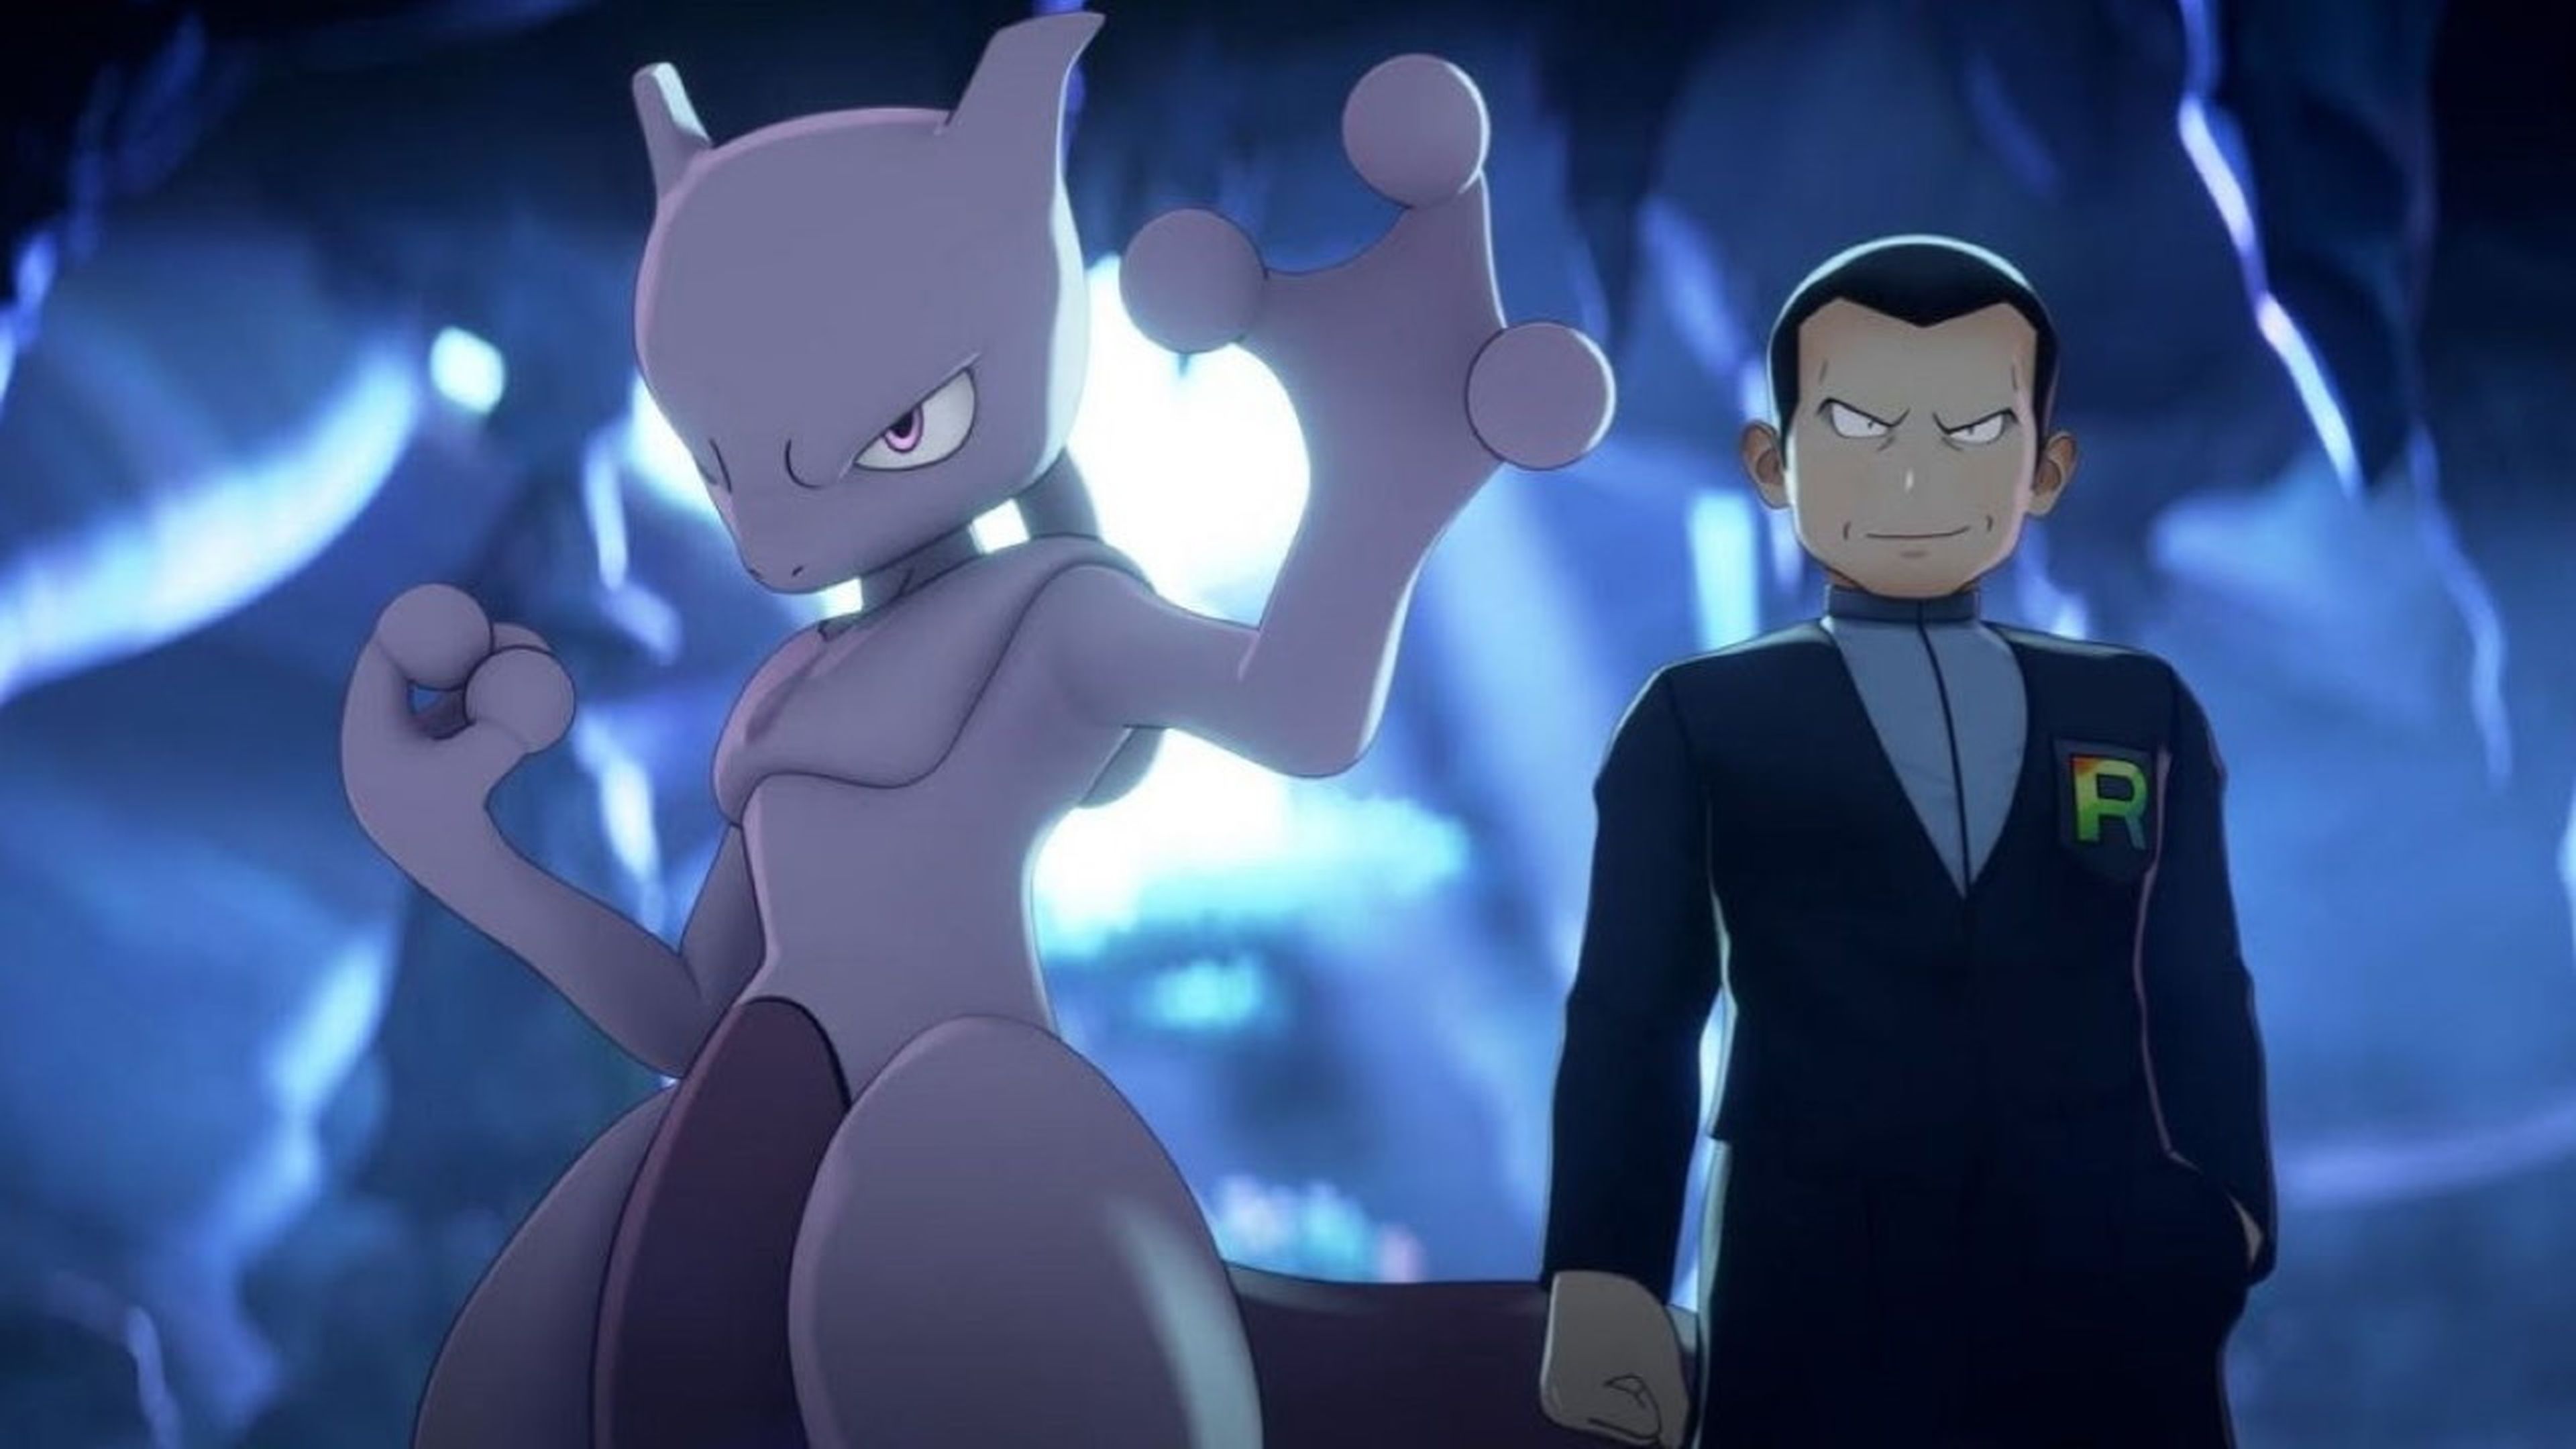 Pokémon GO: Nueva investigación de Giovanni con Mewtwo oscuro